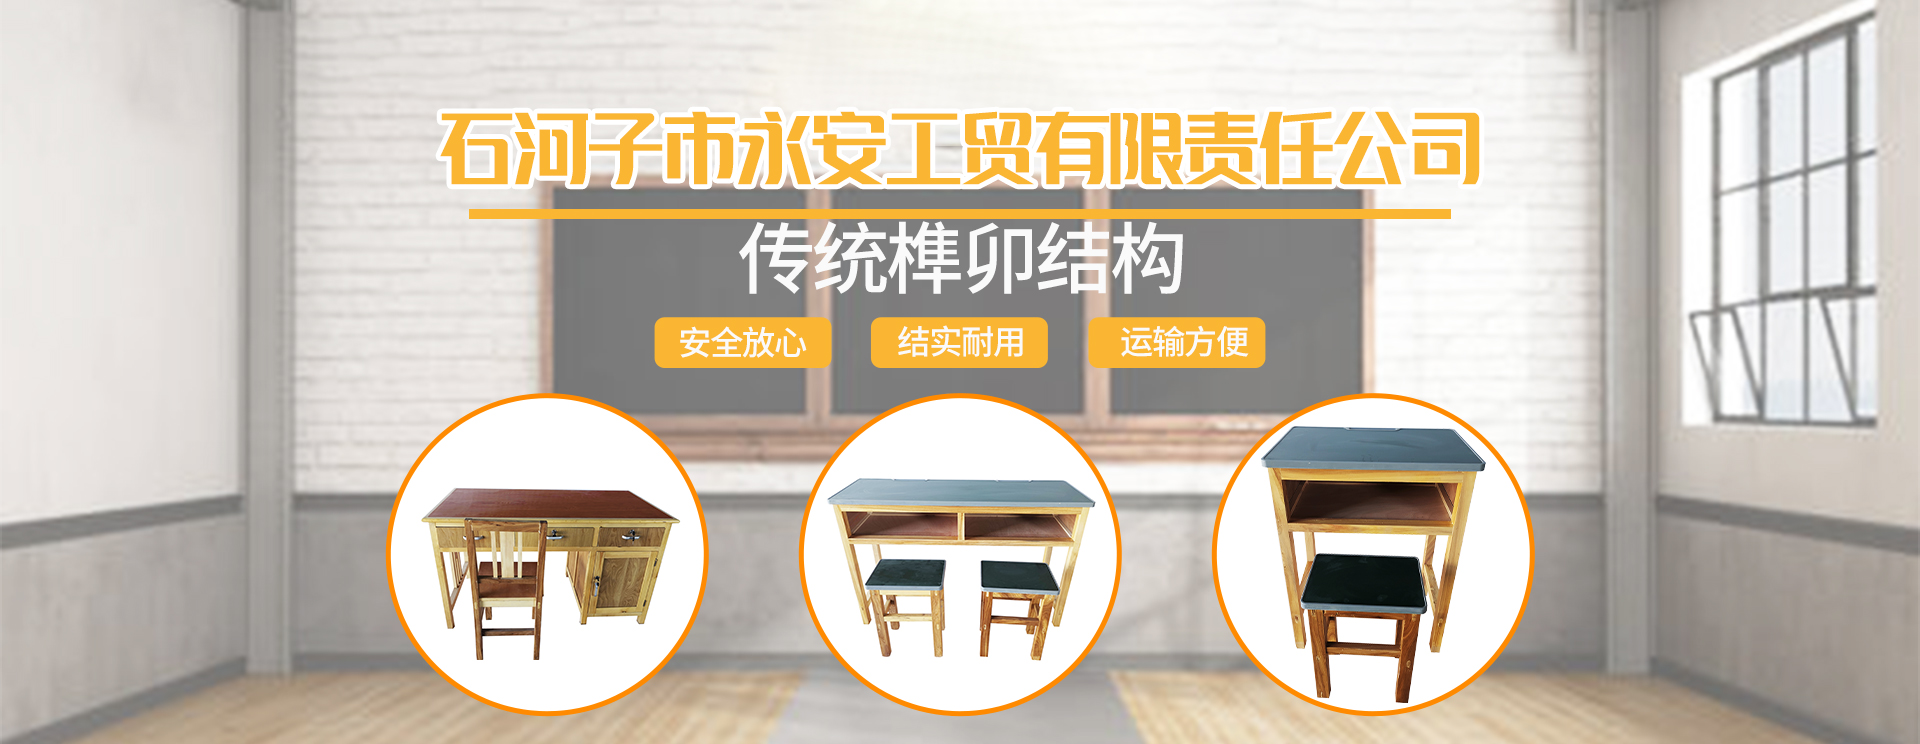 新疆实木课桌椅,新疆实木课桌椅厂,石河子实木课桌椅